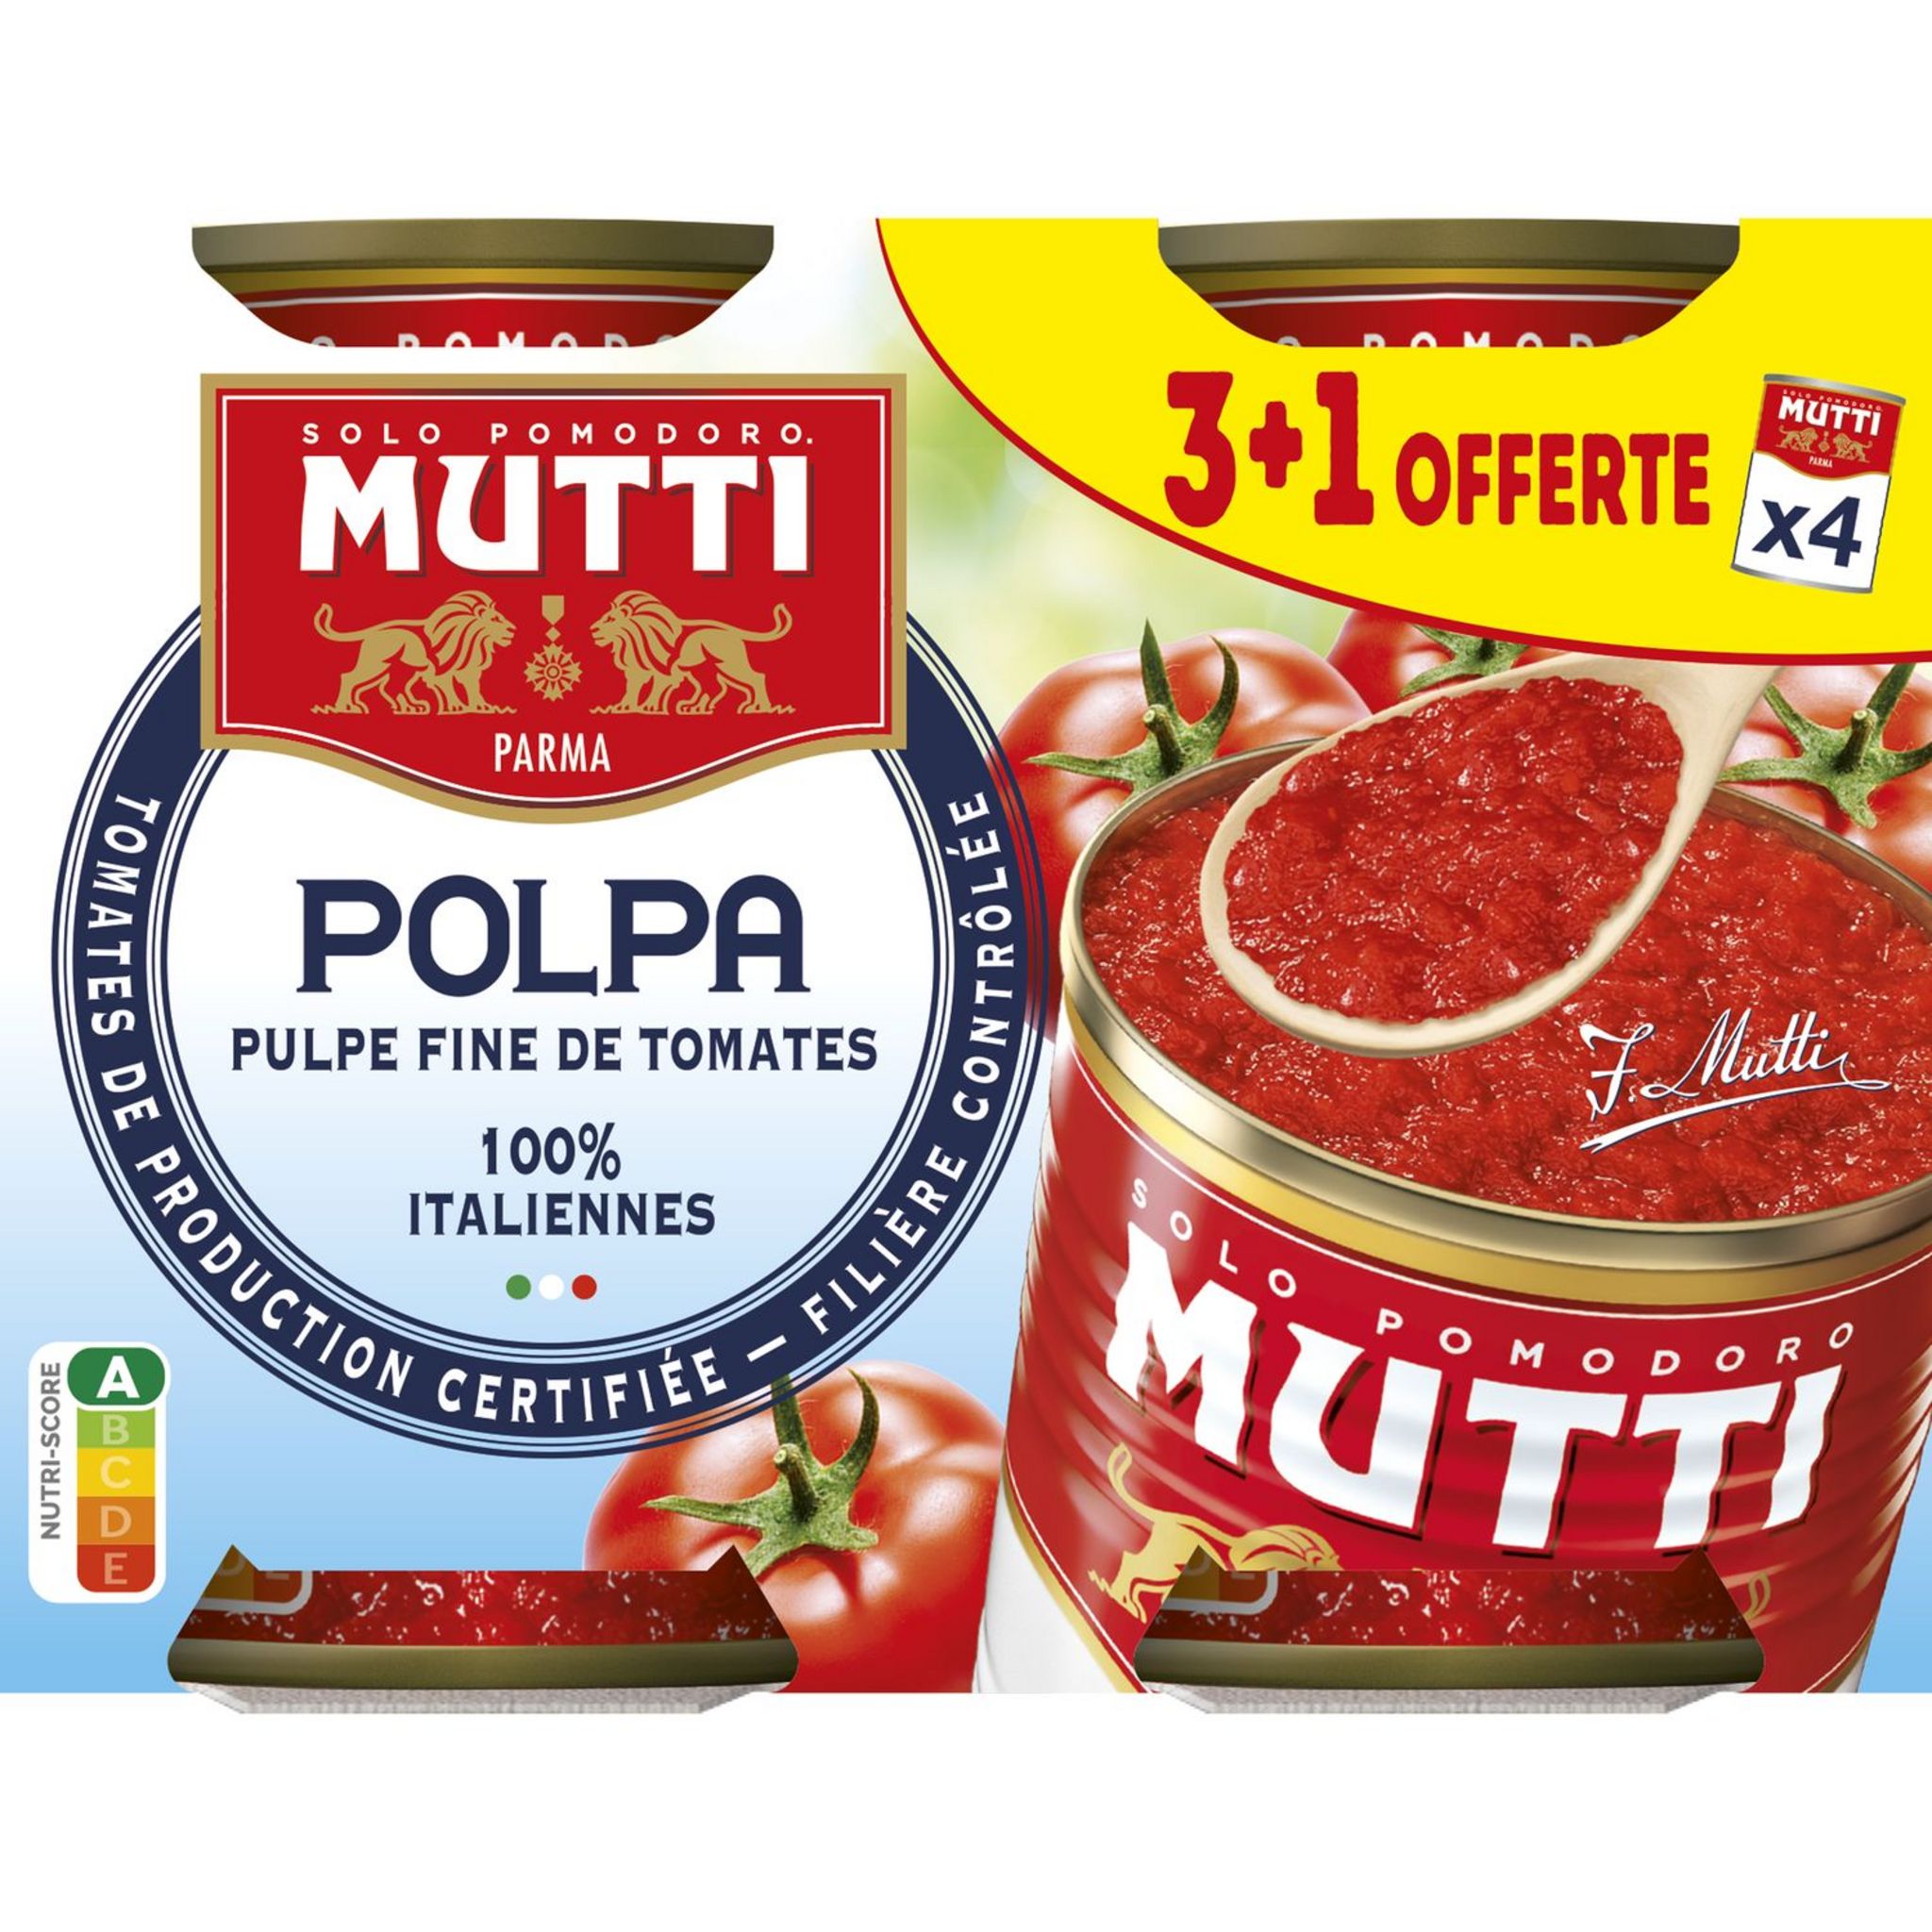 Pulpe fine de tomates - Mutti